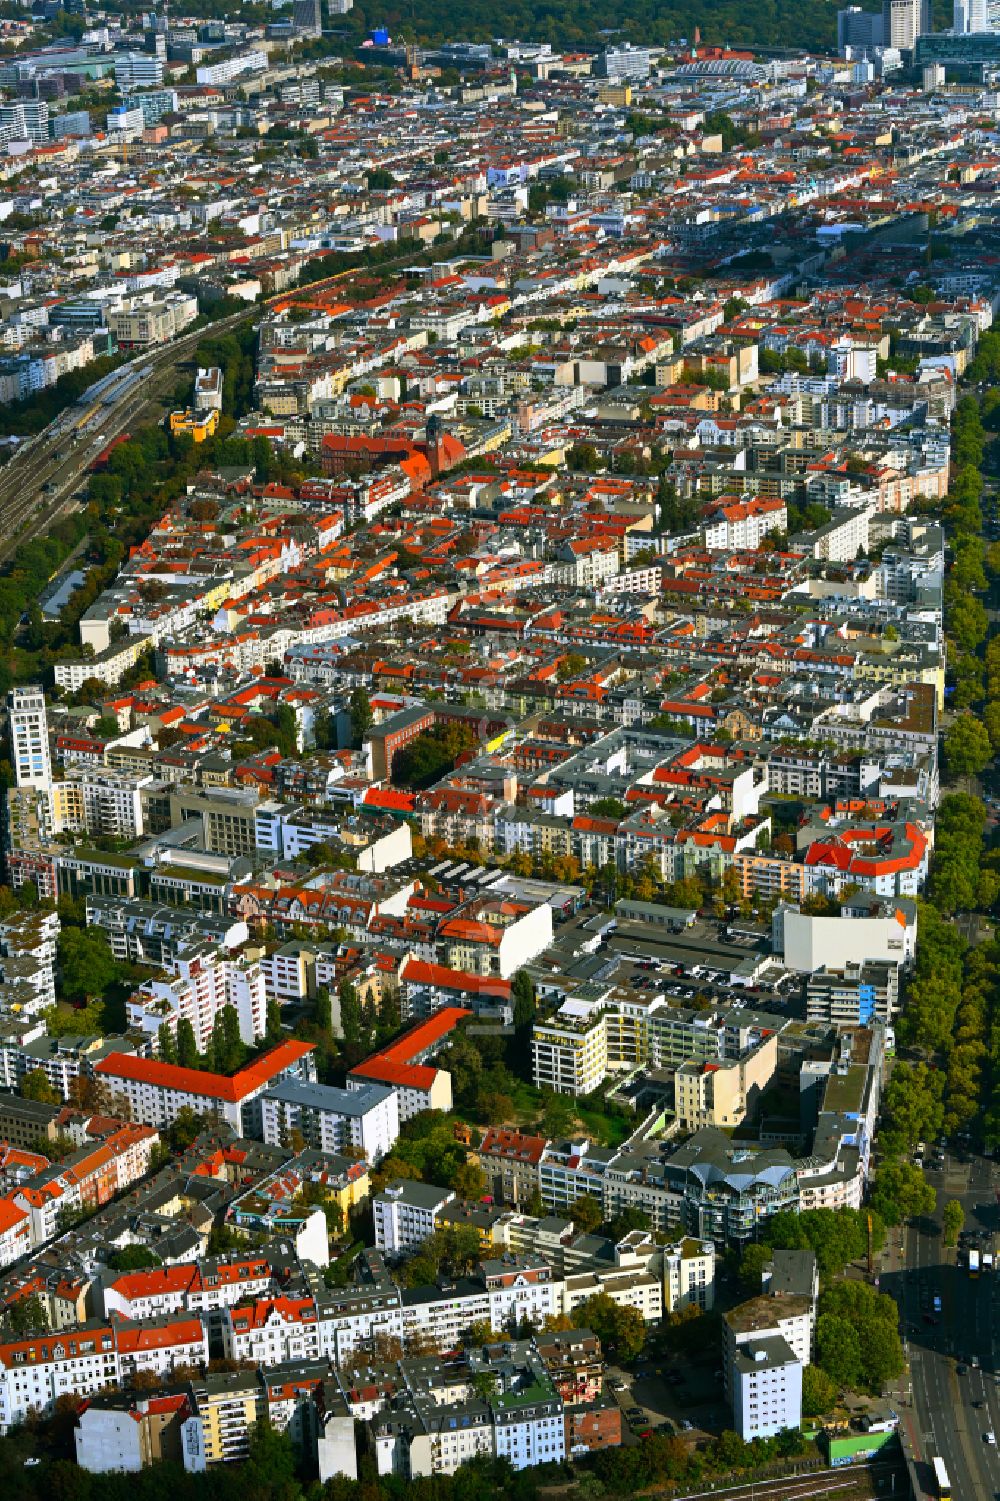 Luftbild Berlin - Stadtansicht zwischen Ringbahn und Kurfürstendamm in Berlin, Deutschland